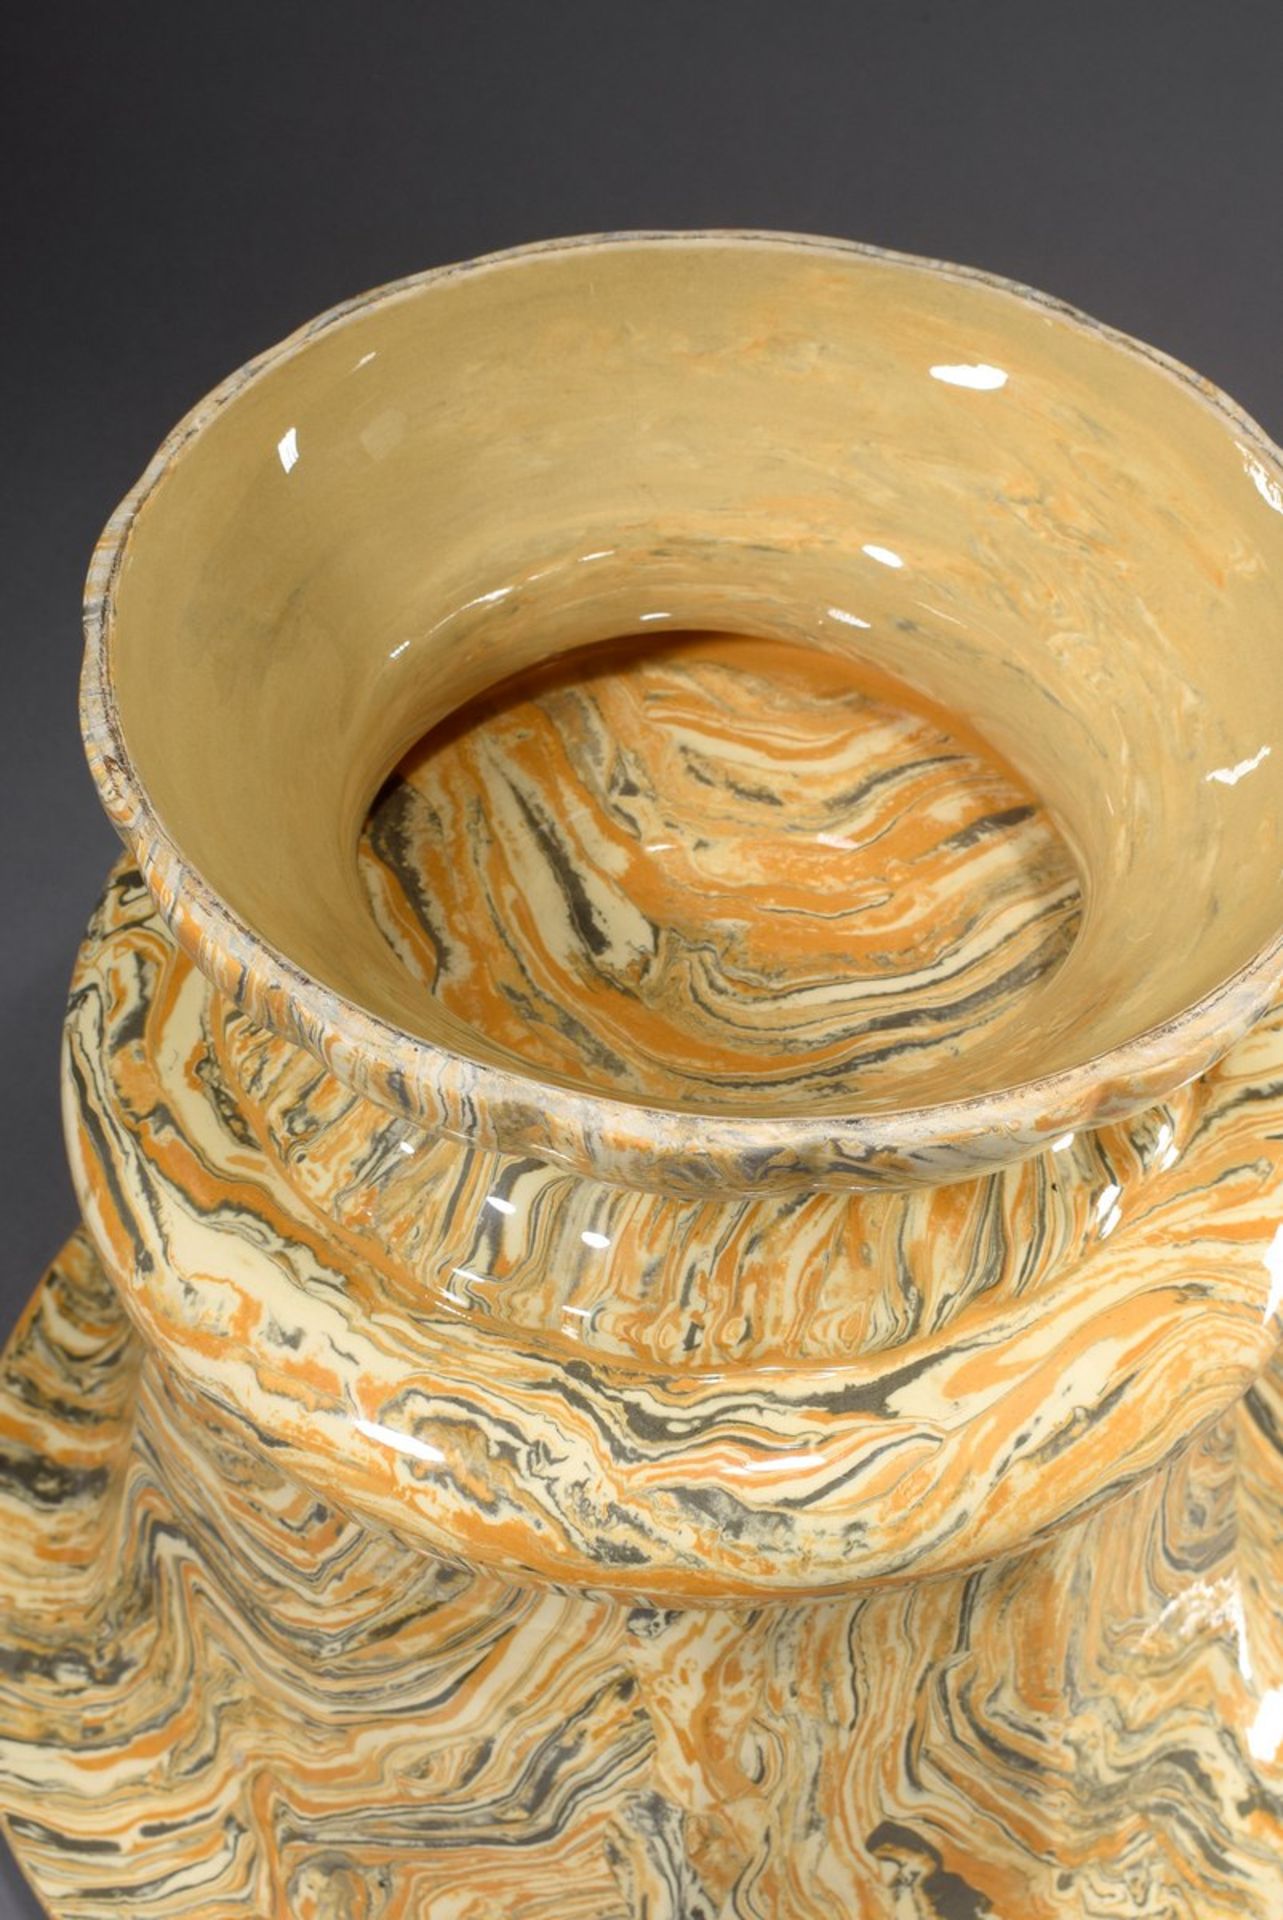 Marmorierter Keramik Übertopf in Grau/Orange/Beige mit mehreckigem Korpus, wohl Frankreich um - Bild 3 aus 3